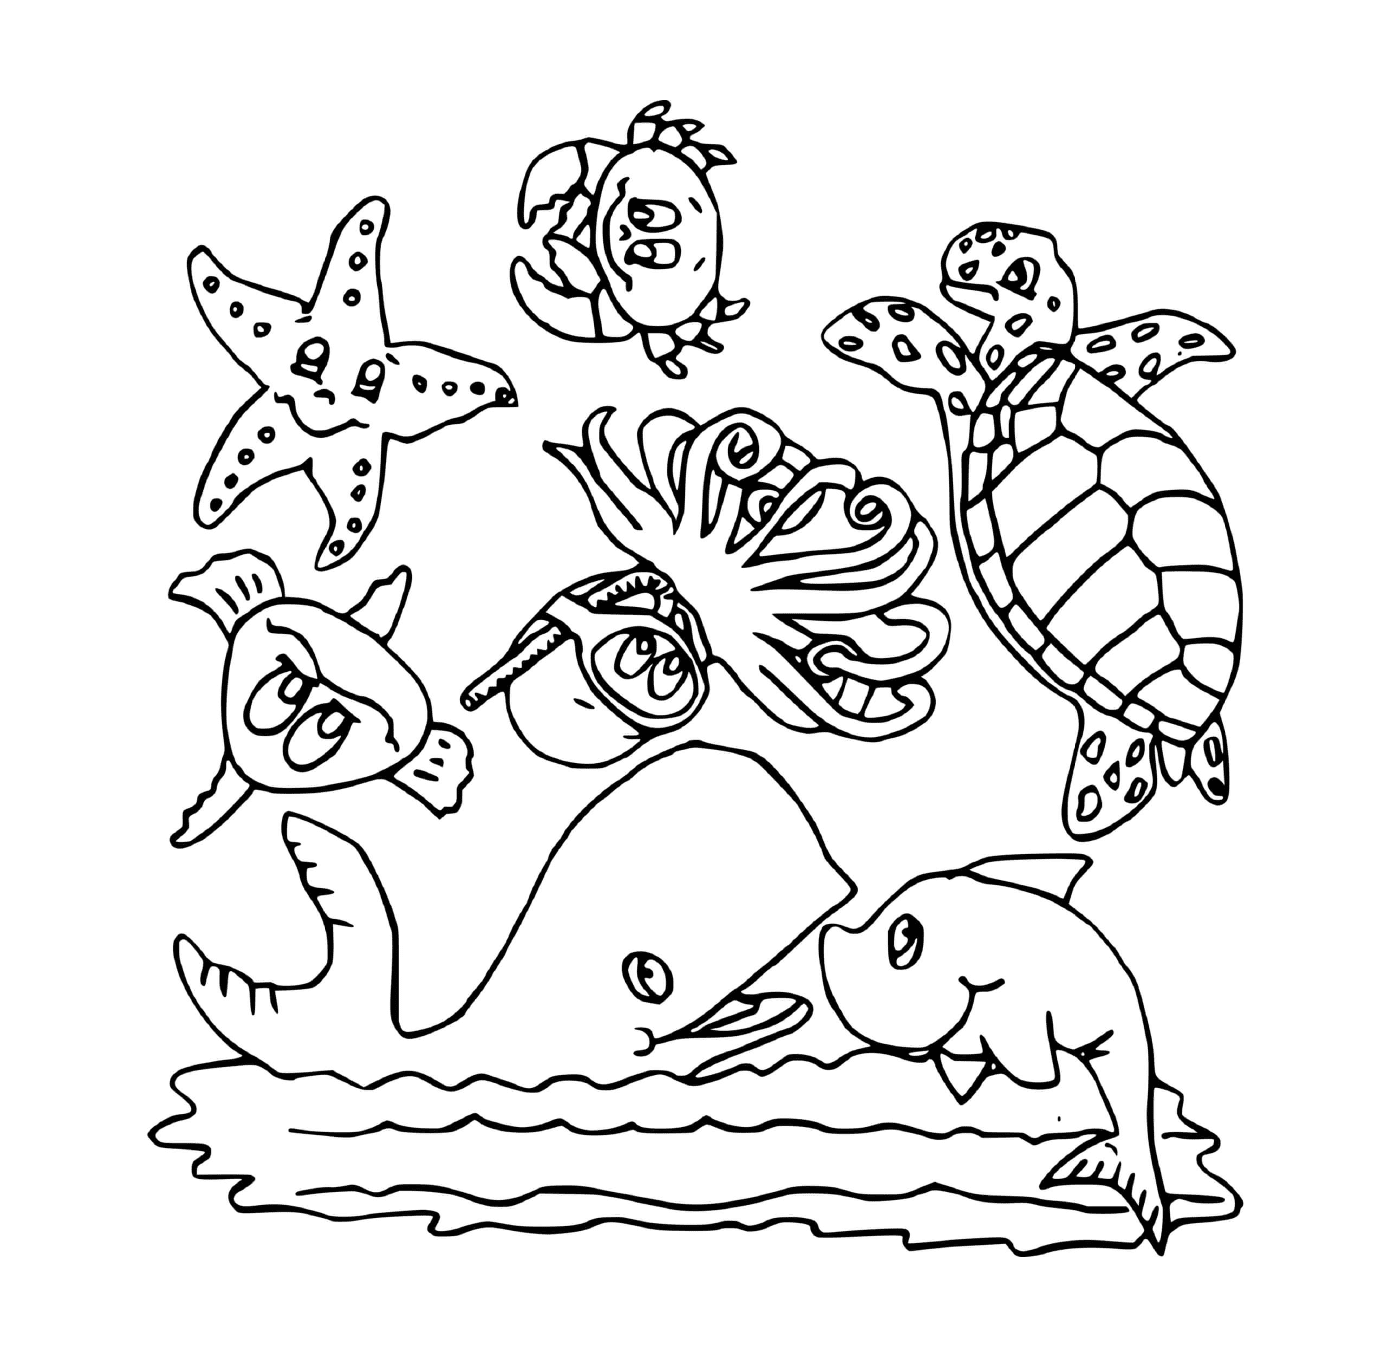  Группа морских животных в воде 